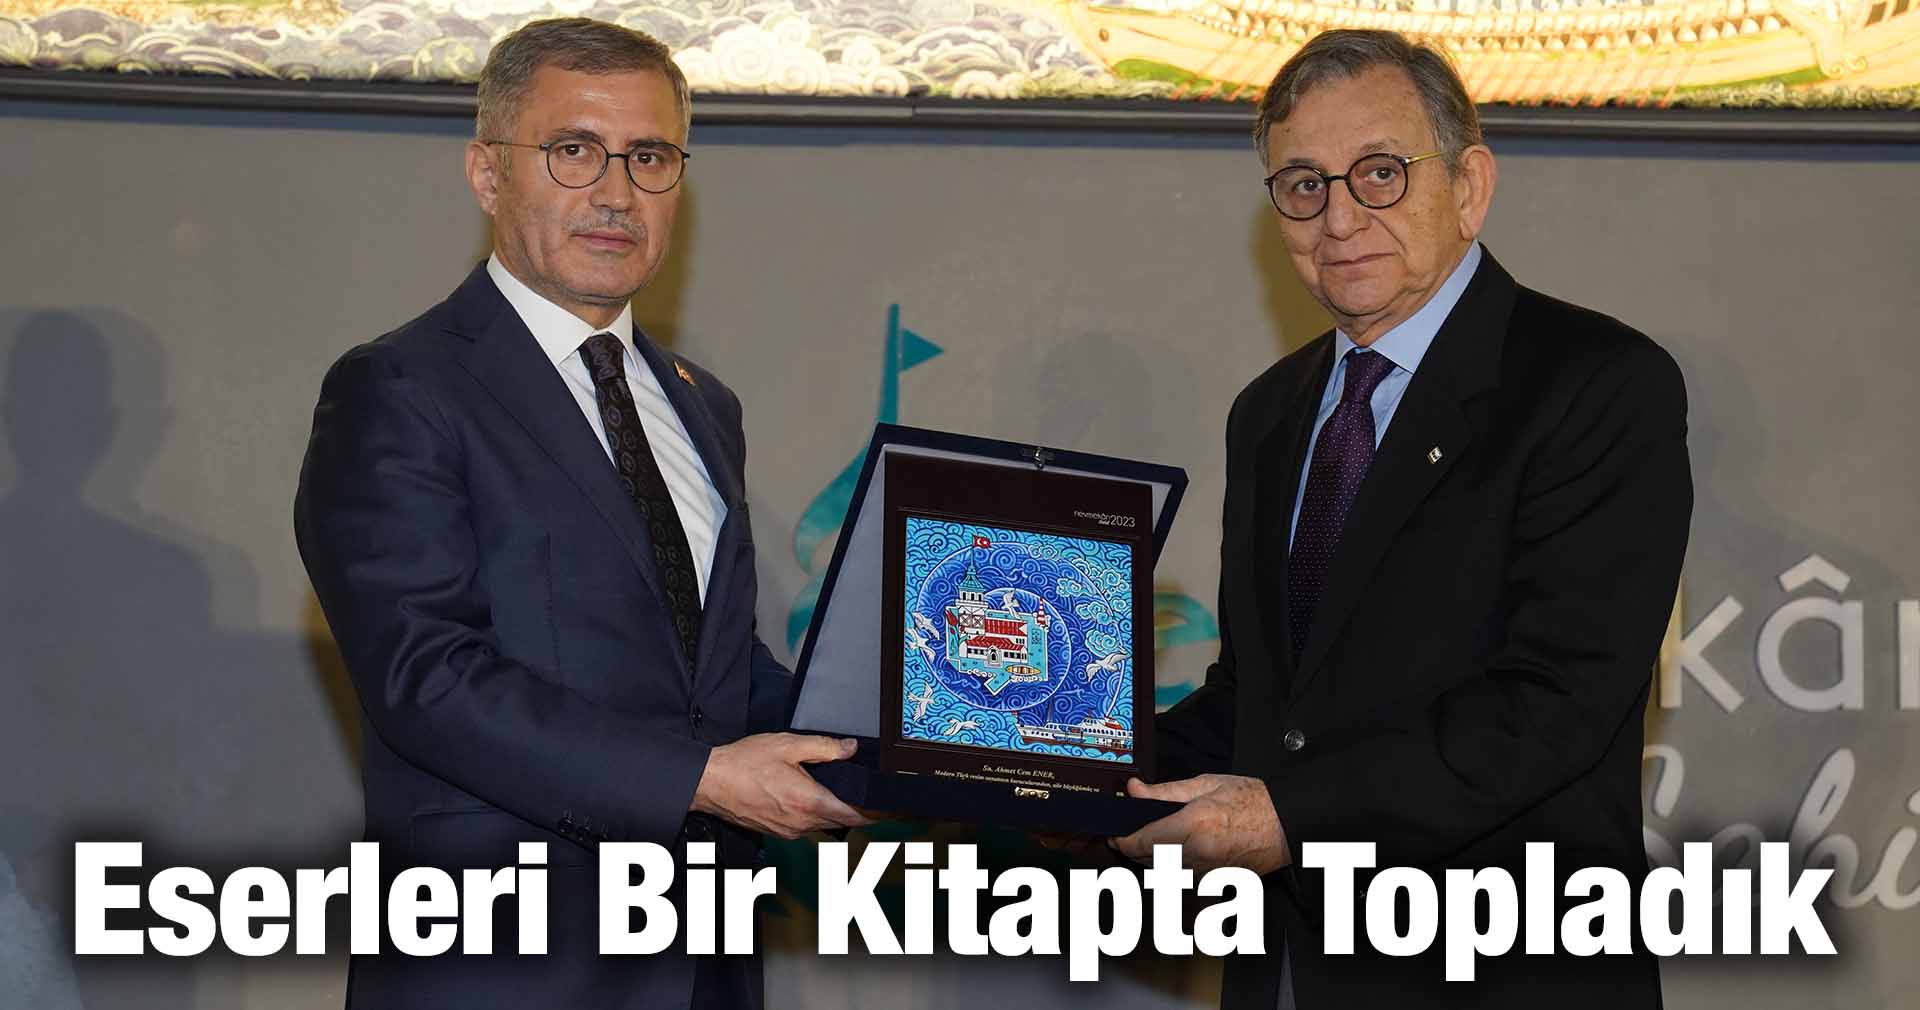 Türkmen: Eserleri Bir Kitapta Topladık